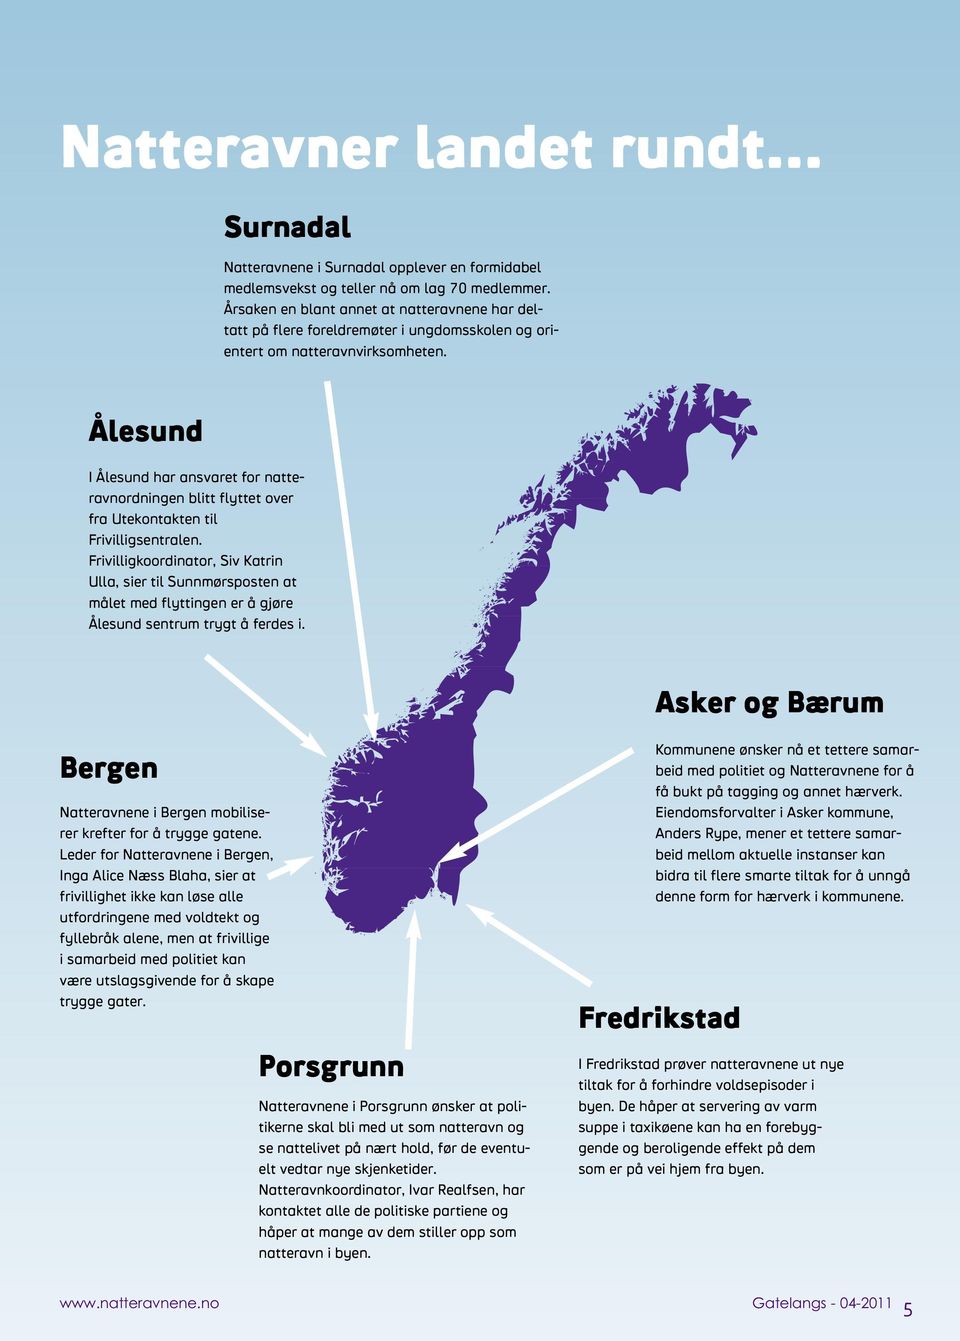 Ålesund I Ålesund har ansvaret for natteravnordningen blitt flyttet over fra Utekontakten til Frivilligsentralen.